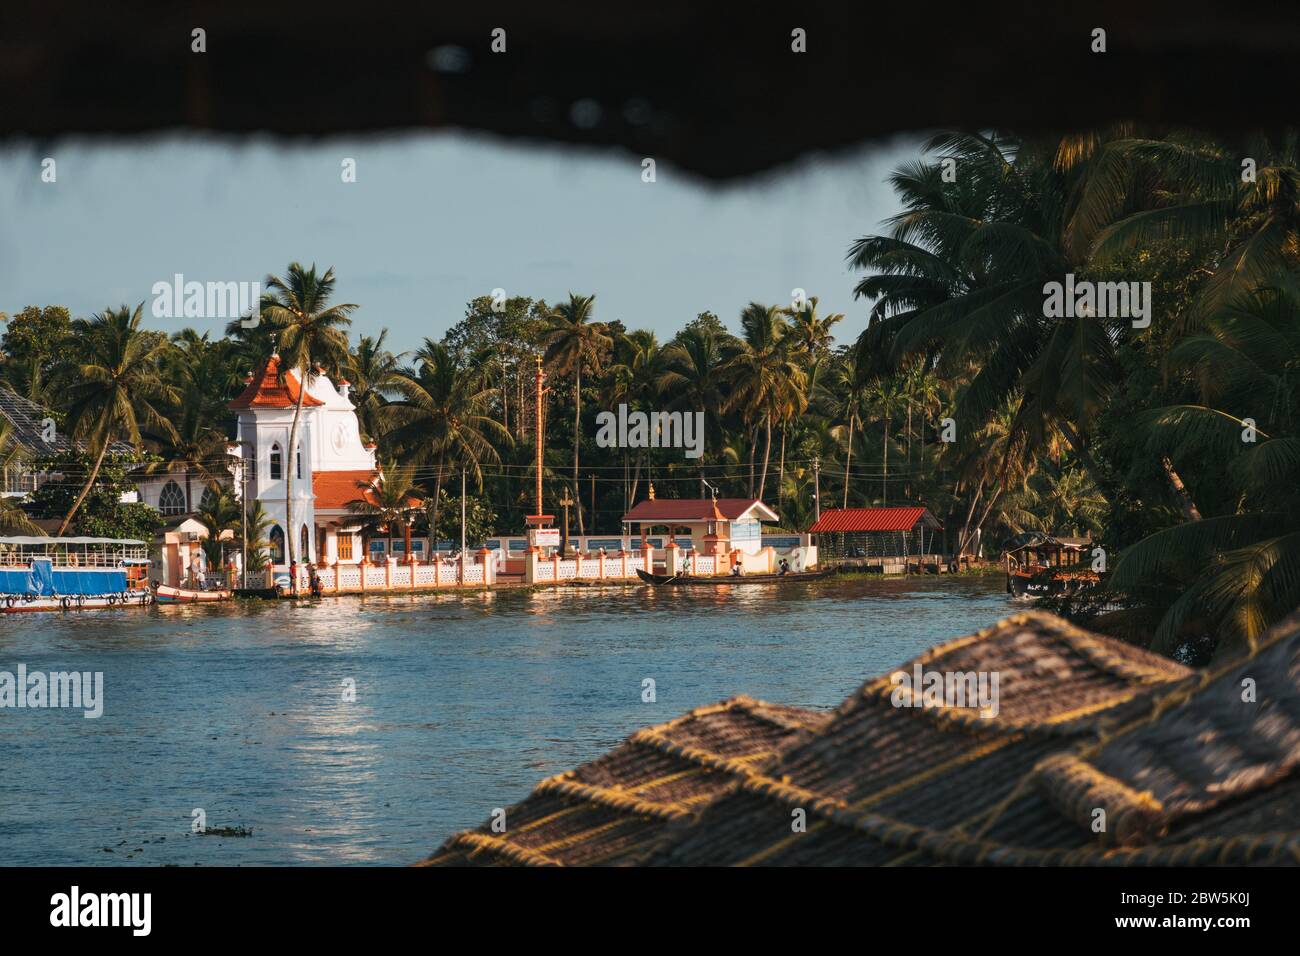 Une petite église chrétienne sur les rives des eaux du Kerala en Inde, vue de l'arrière d'une péniche Banque D'Images